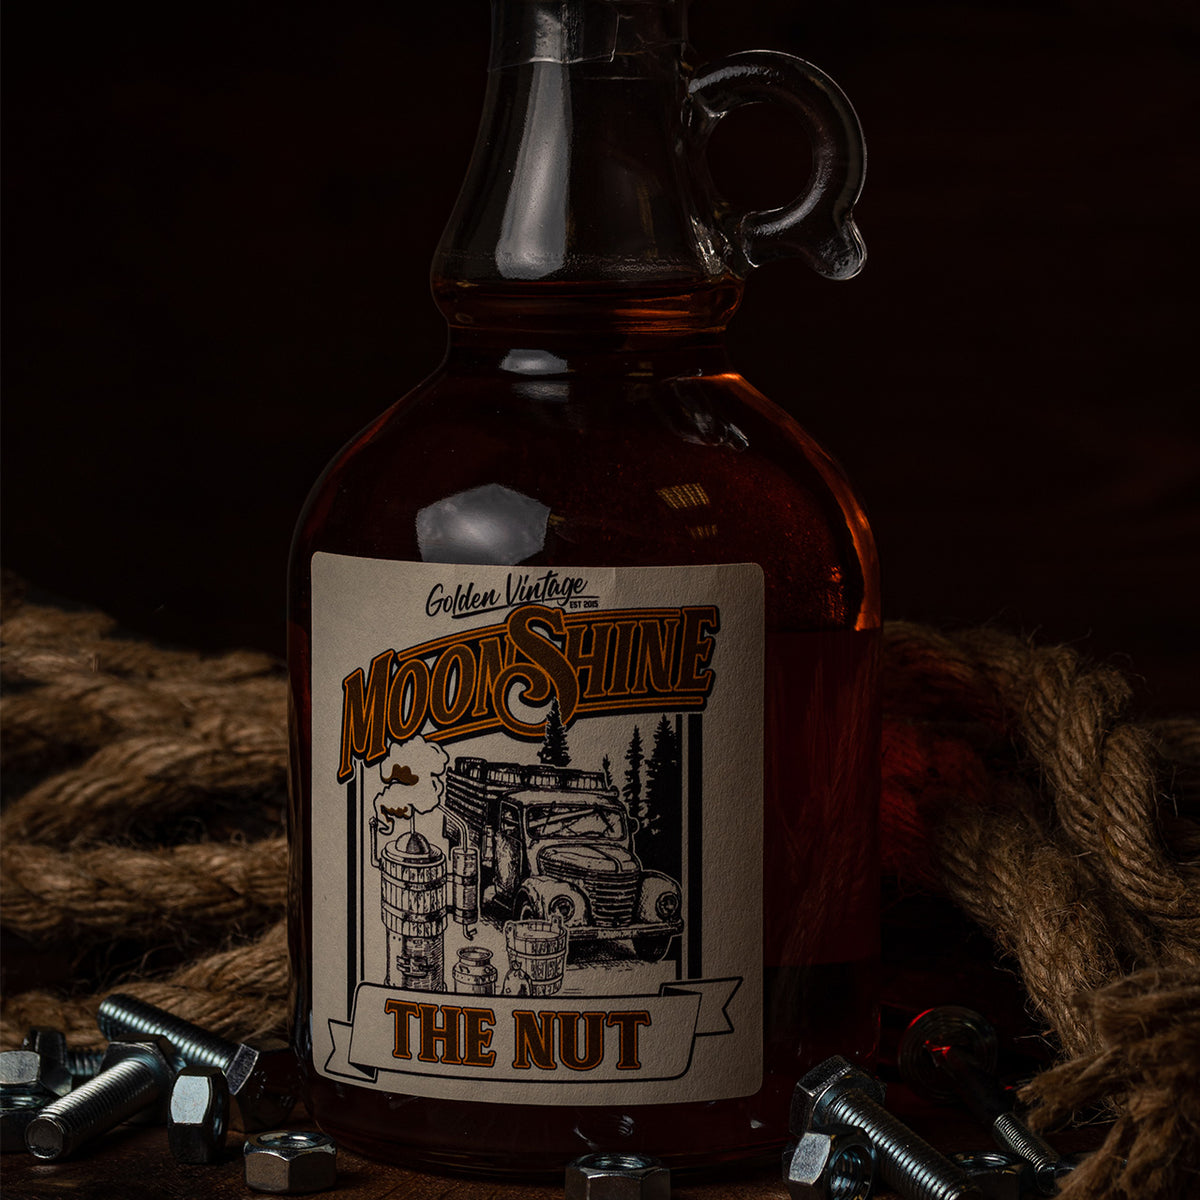 Old Bastard Moonshine "The Nut"